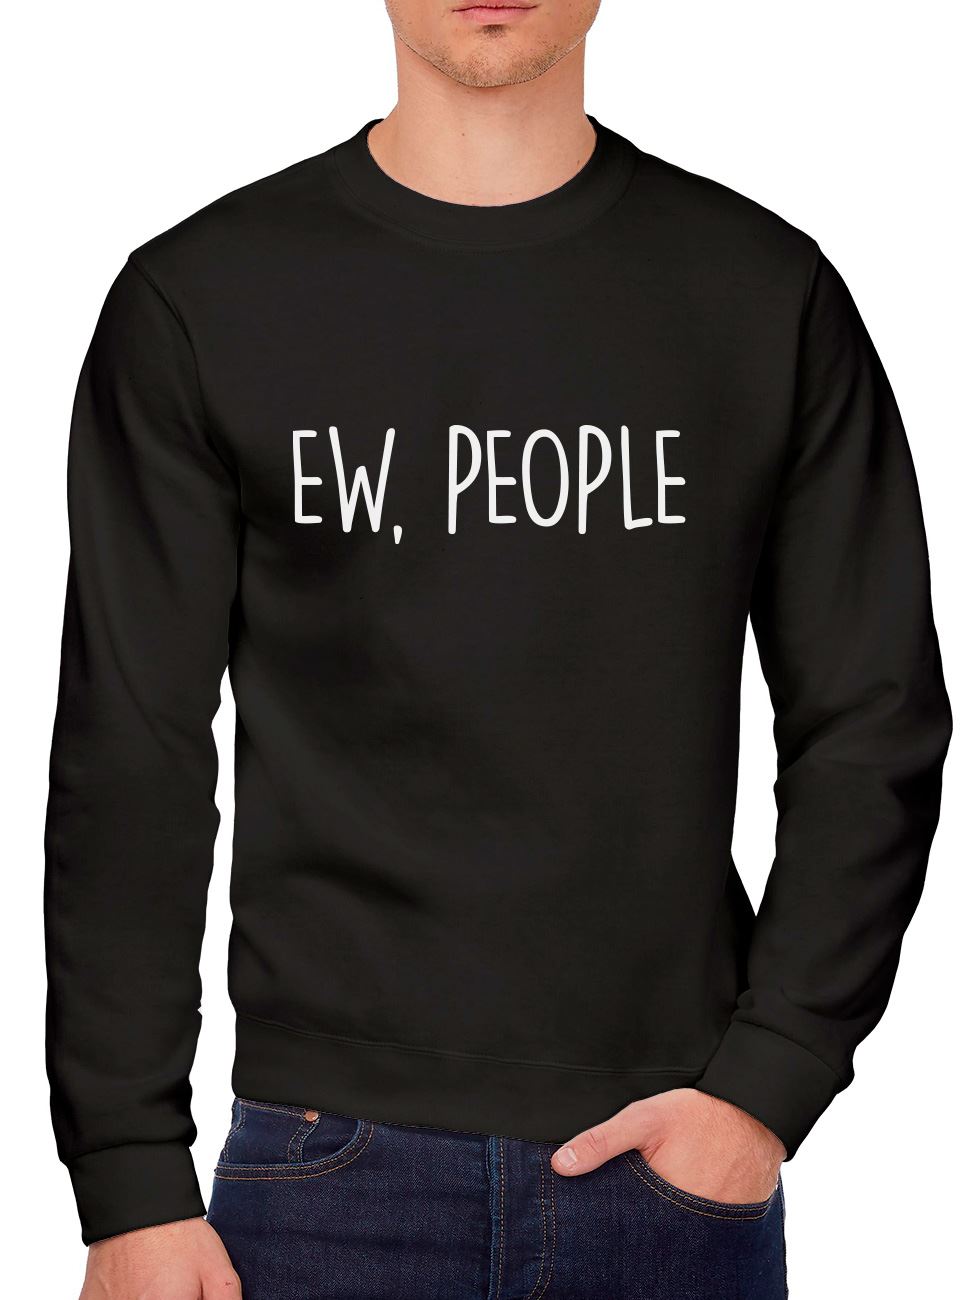 Ew People - Youth & Mens Sweatshirt